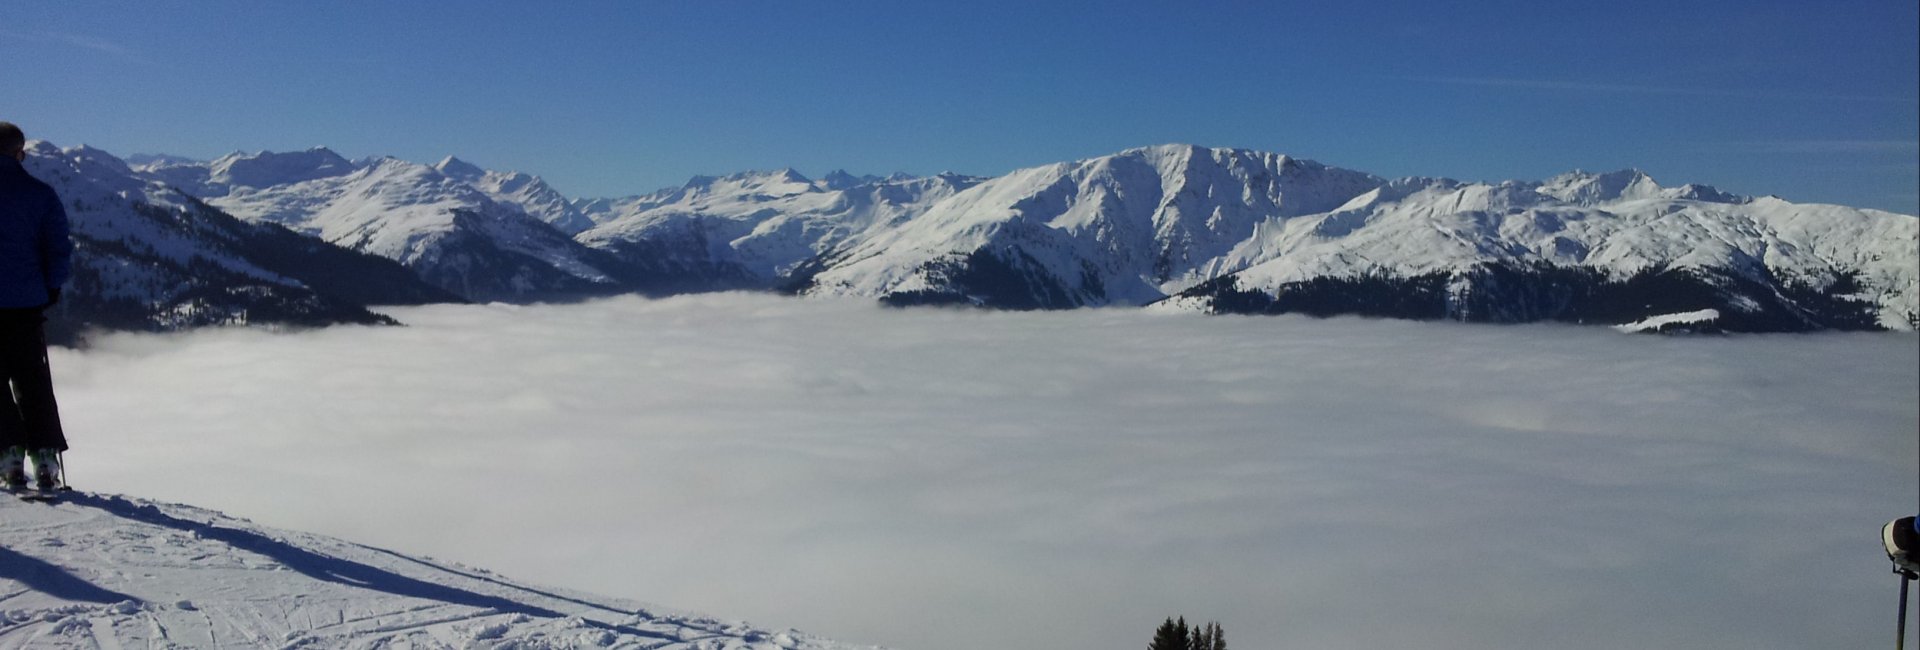 Skiën boven de wolken Oostenrijk